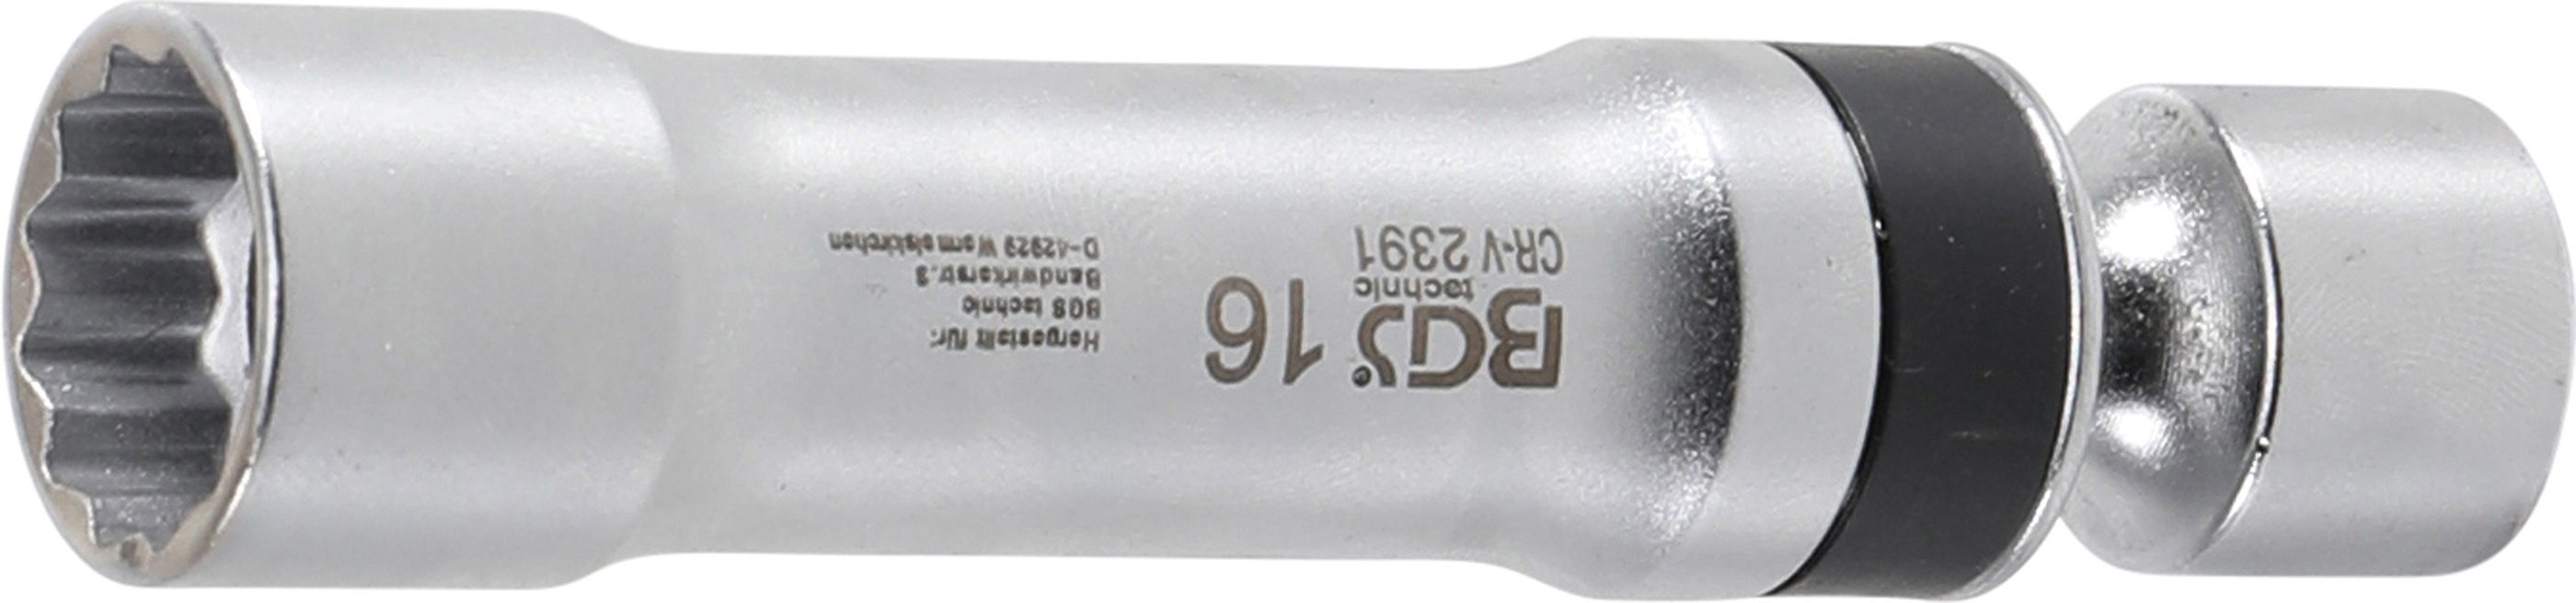 BGS 2391 Cheie tubulara de bujii 16mm articulata in 12 colturi cu arc interior pentru fixarea bujiei